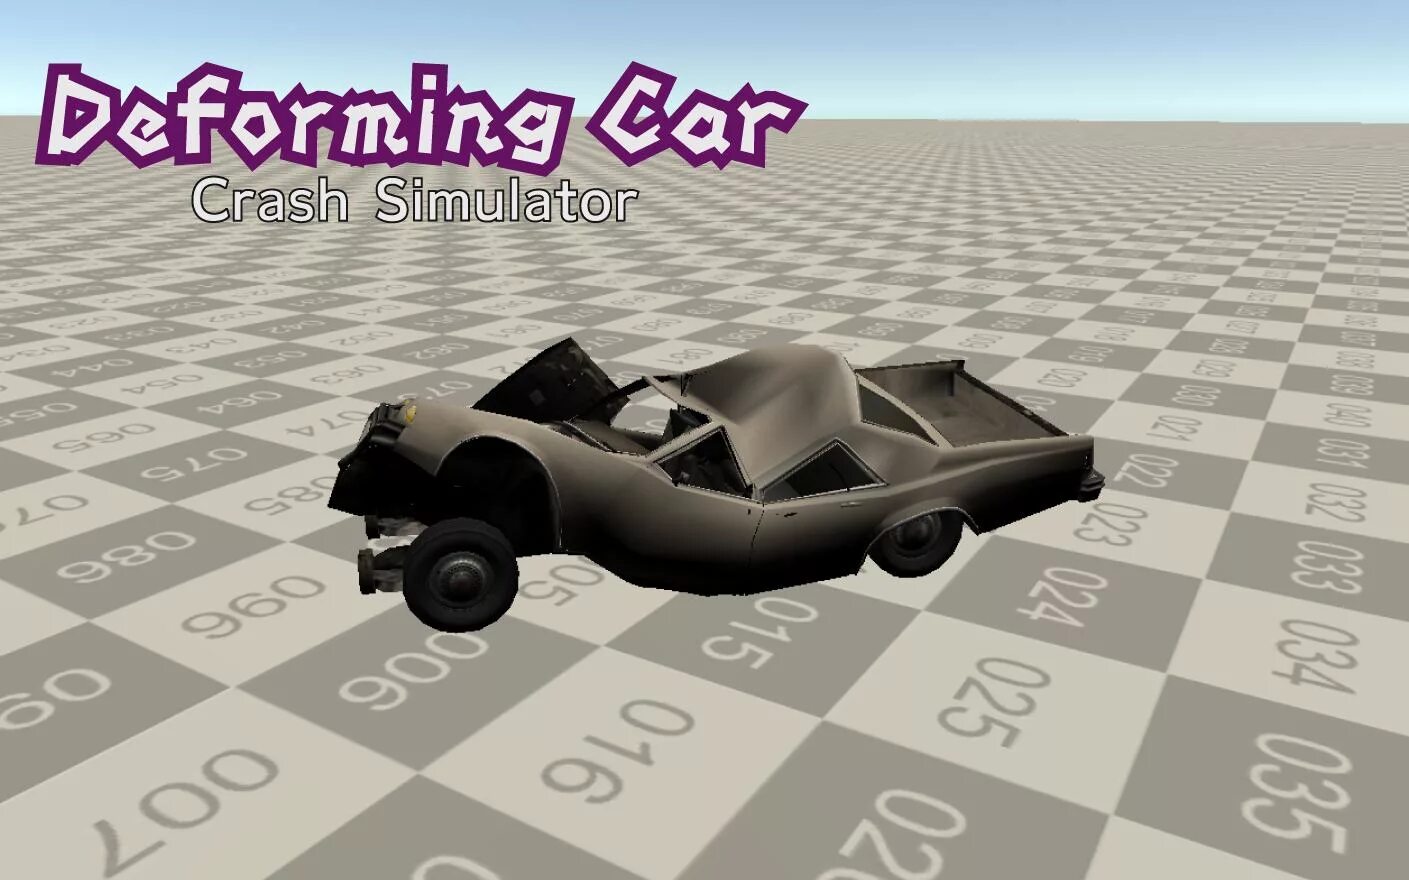 Дефарминг кар краш 2. Deforming car crash Simulator. Кар краш симулятор моды. Deforming car crash. Crushing cars игра